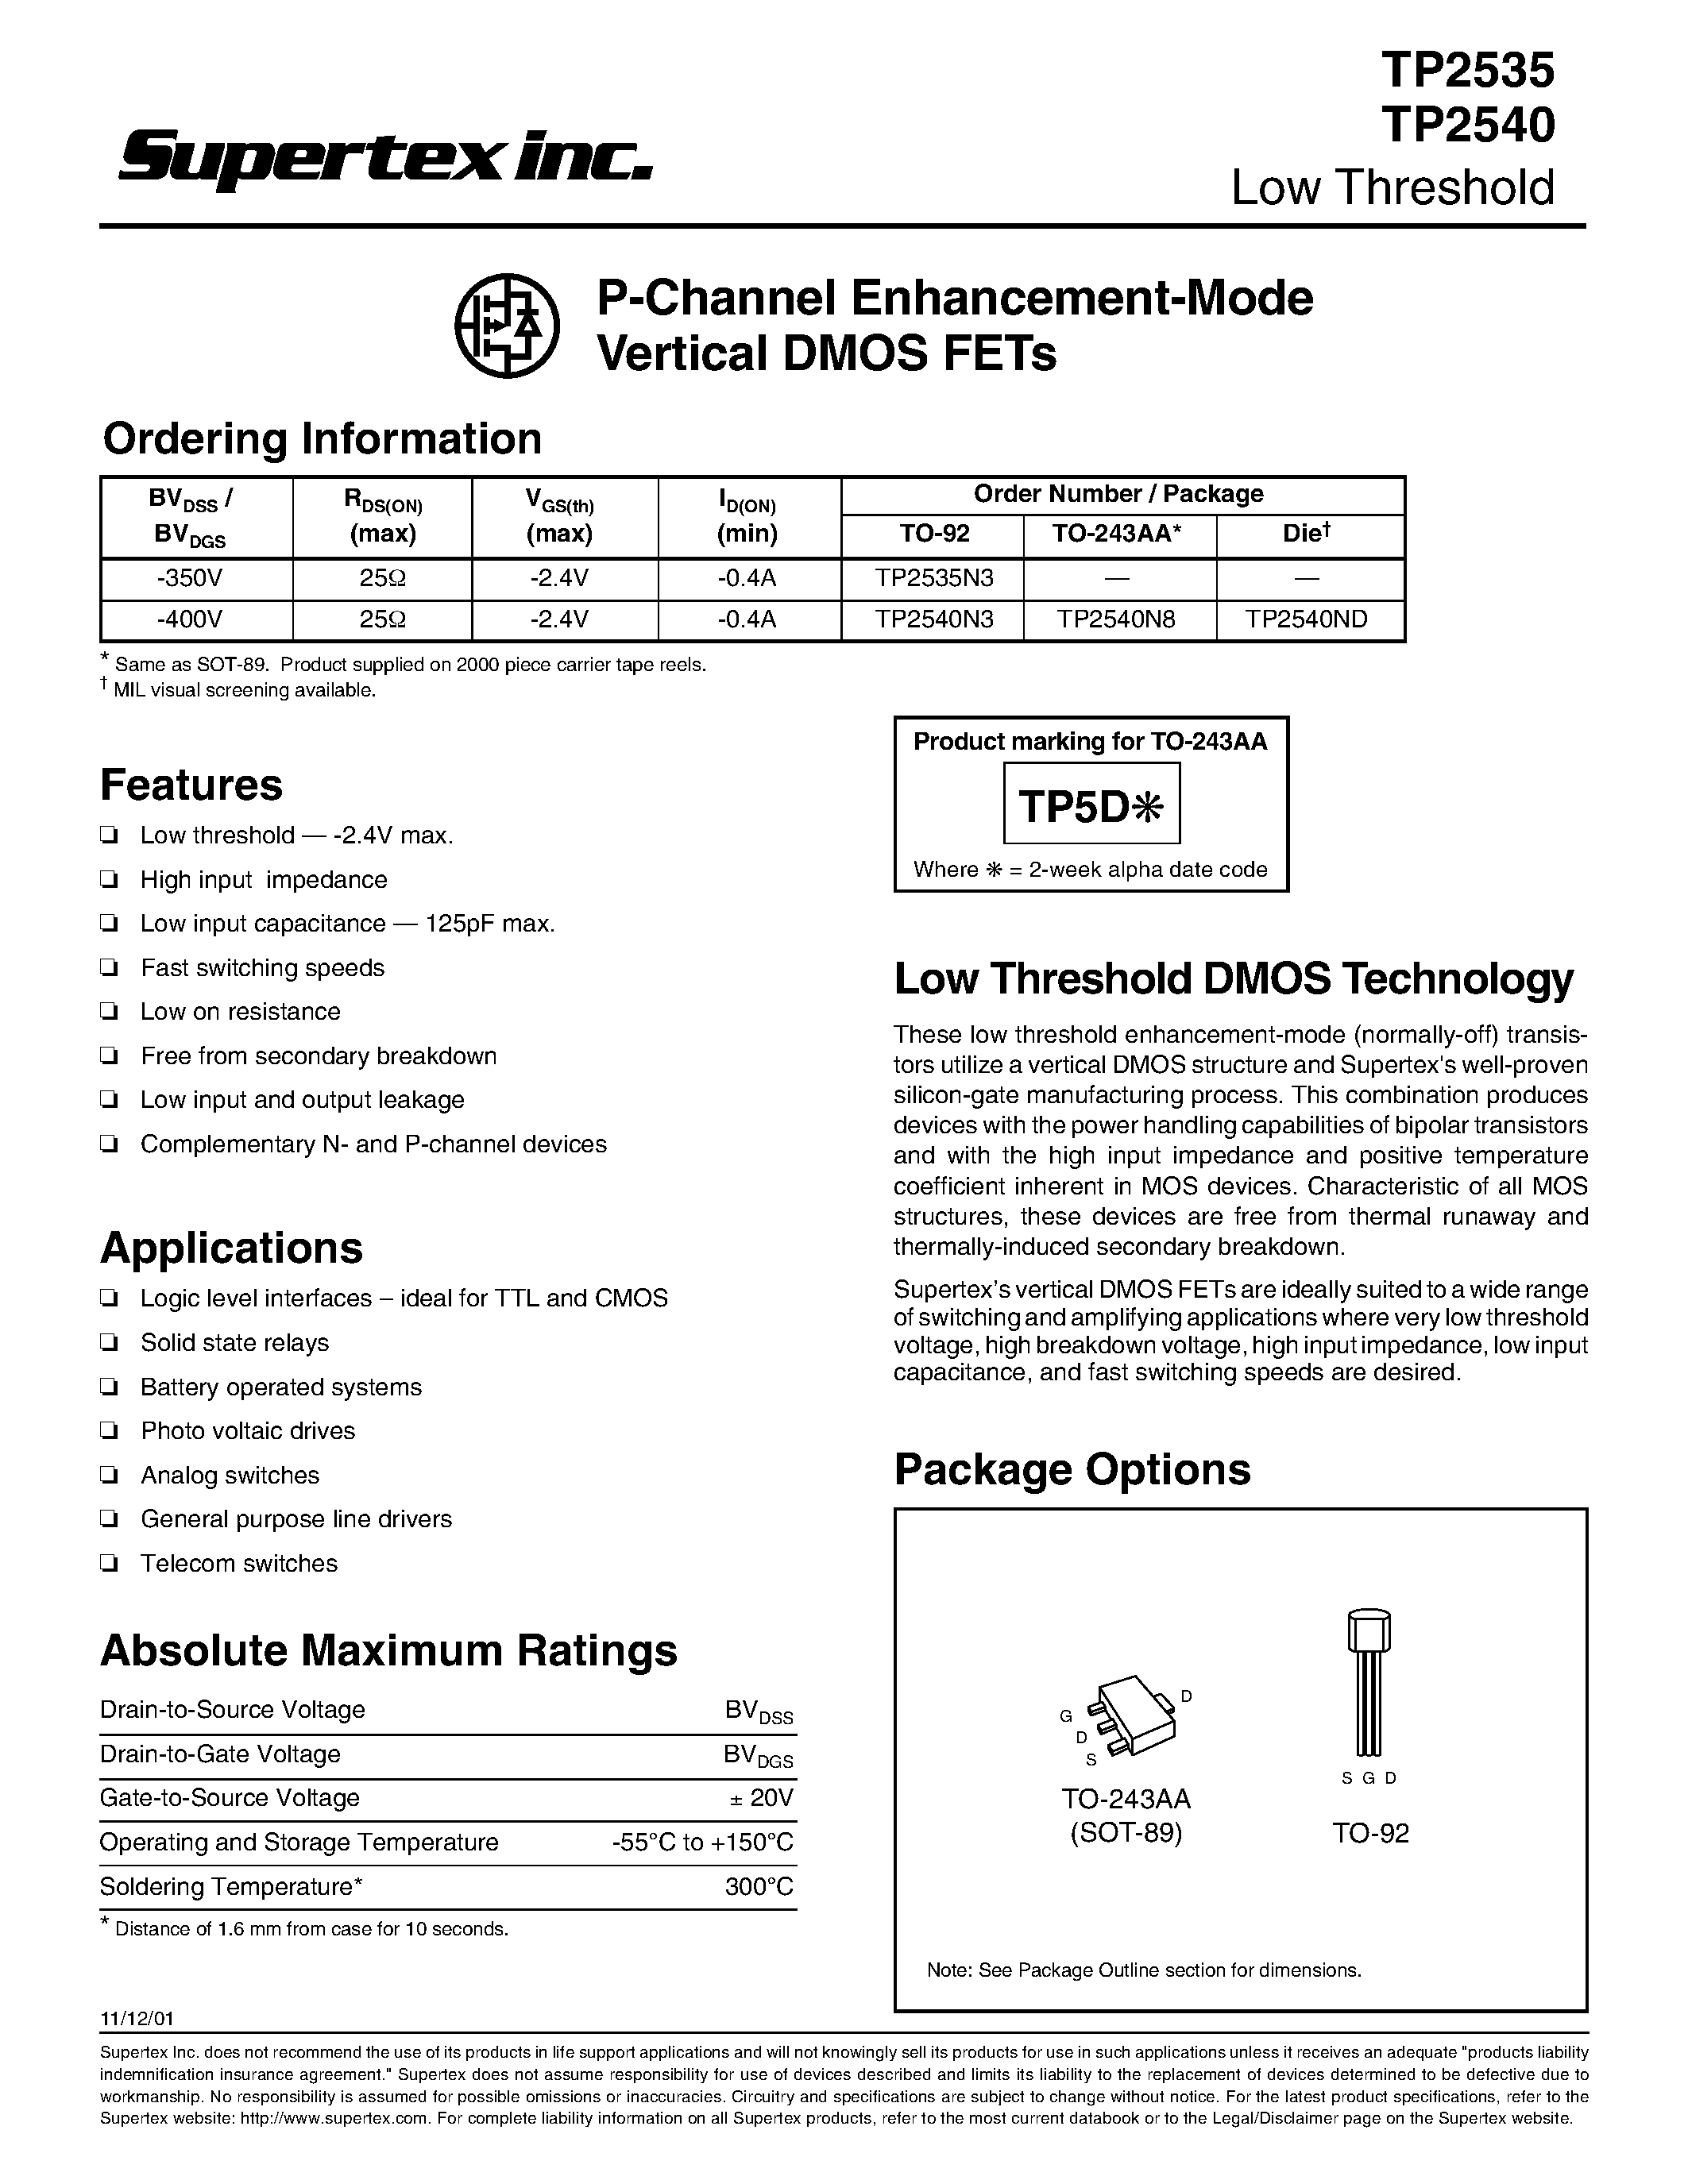 Datasheet TP2535 - P-Channel Enhancement-Mode Vertical DMOS FETs page 1